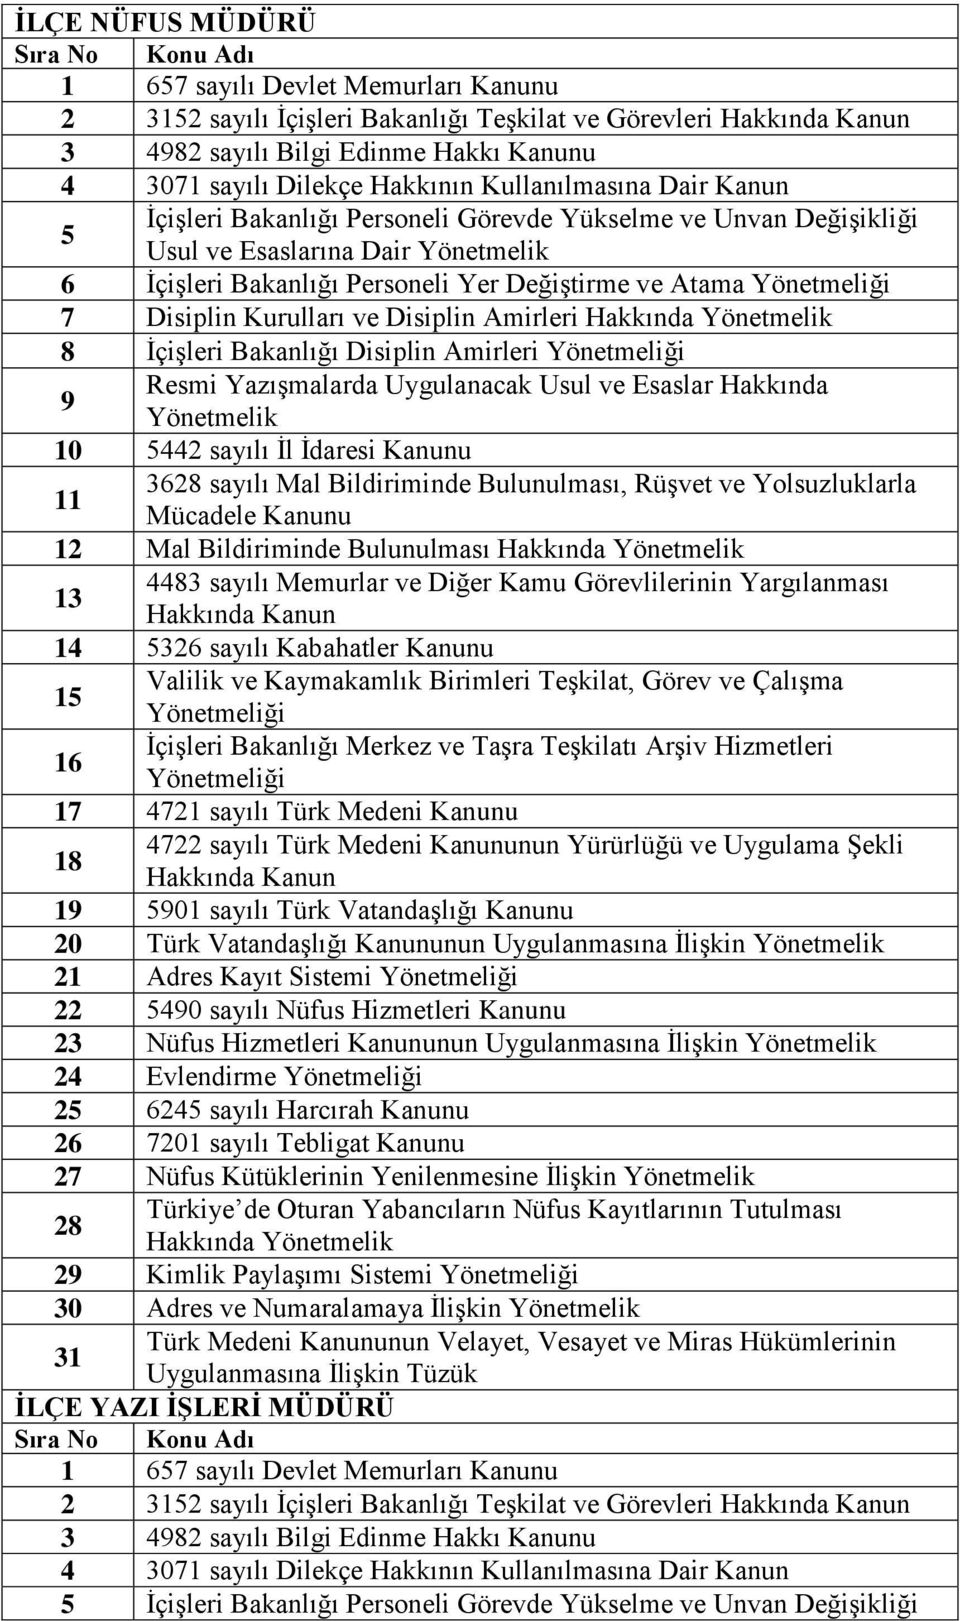 1 01 sayılı Türk Vatandaşlığı Kanunu 20 Türk Vatandaşlığı Kanununun Uygulanmasına İlişkin 21 Adres Kayıt Sistemi 22 40 sayılı Nüfus Hizmetleri Kanunu 23 Nüfus Hizmetleri Kanununun Uygulanmasına